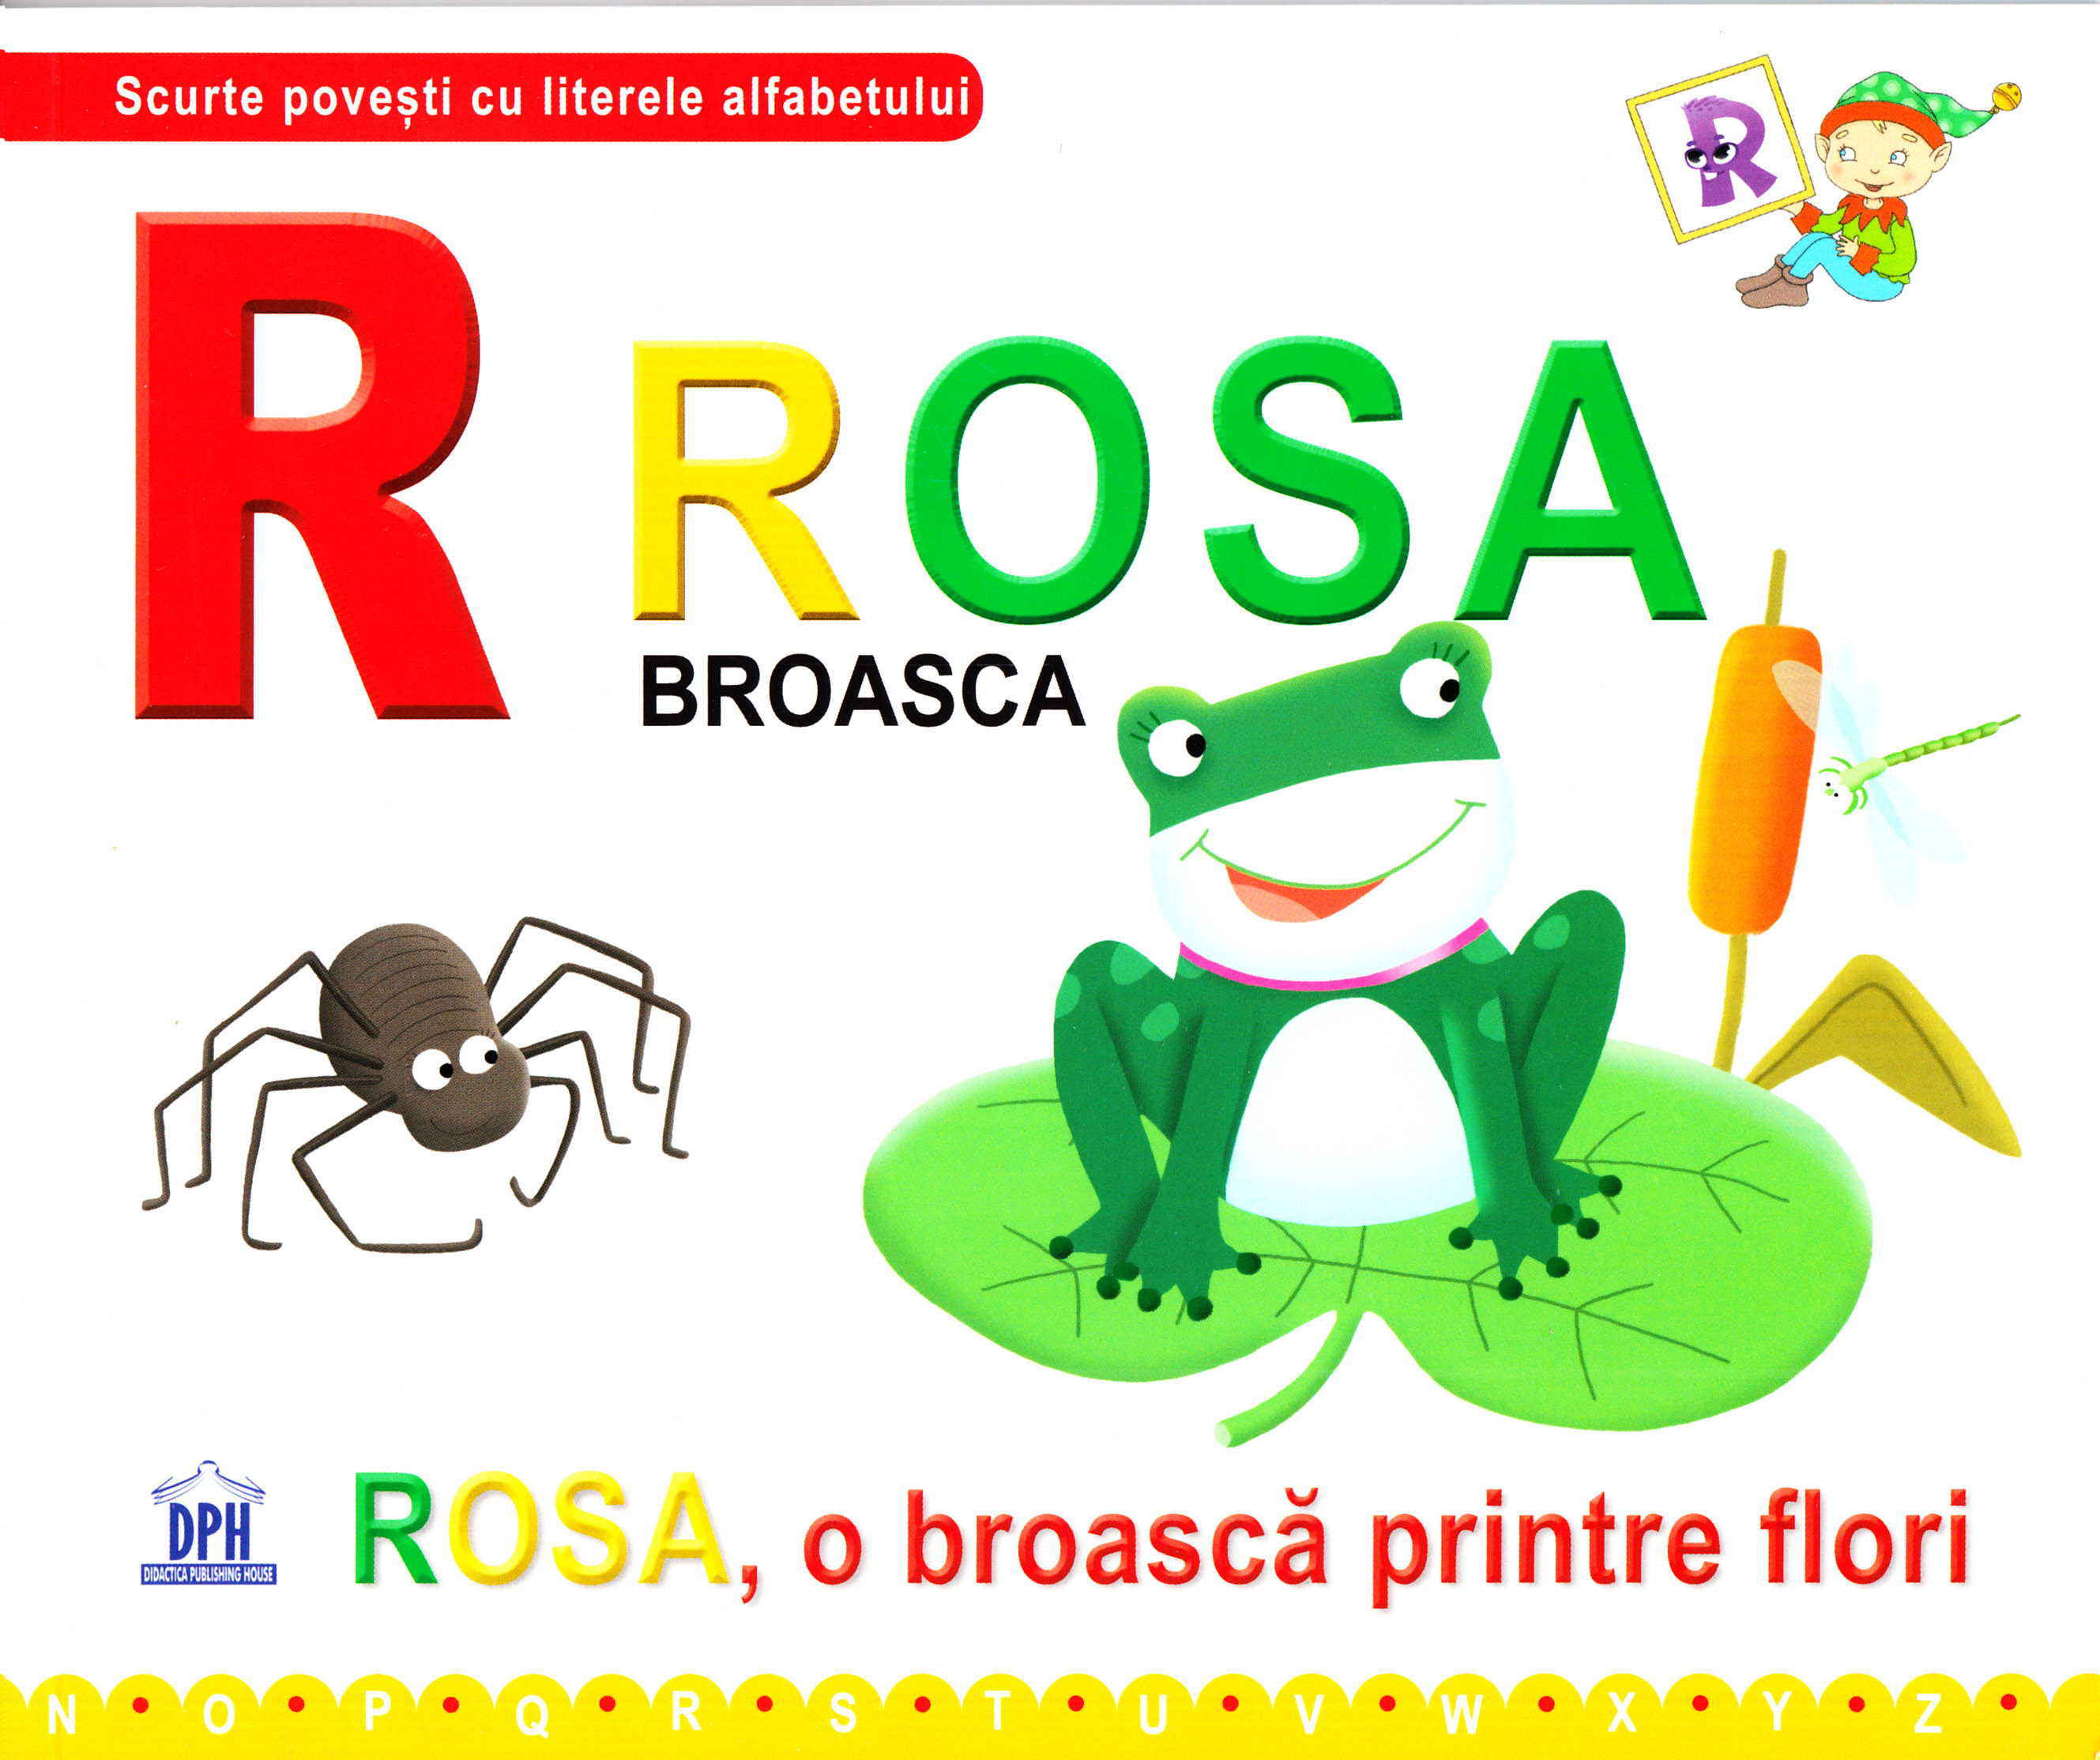  R de la Rosa, Broasca - Rosa, o broasca printre flori (necartonat)